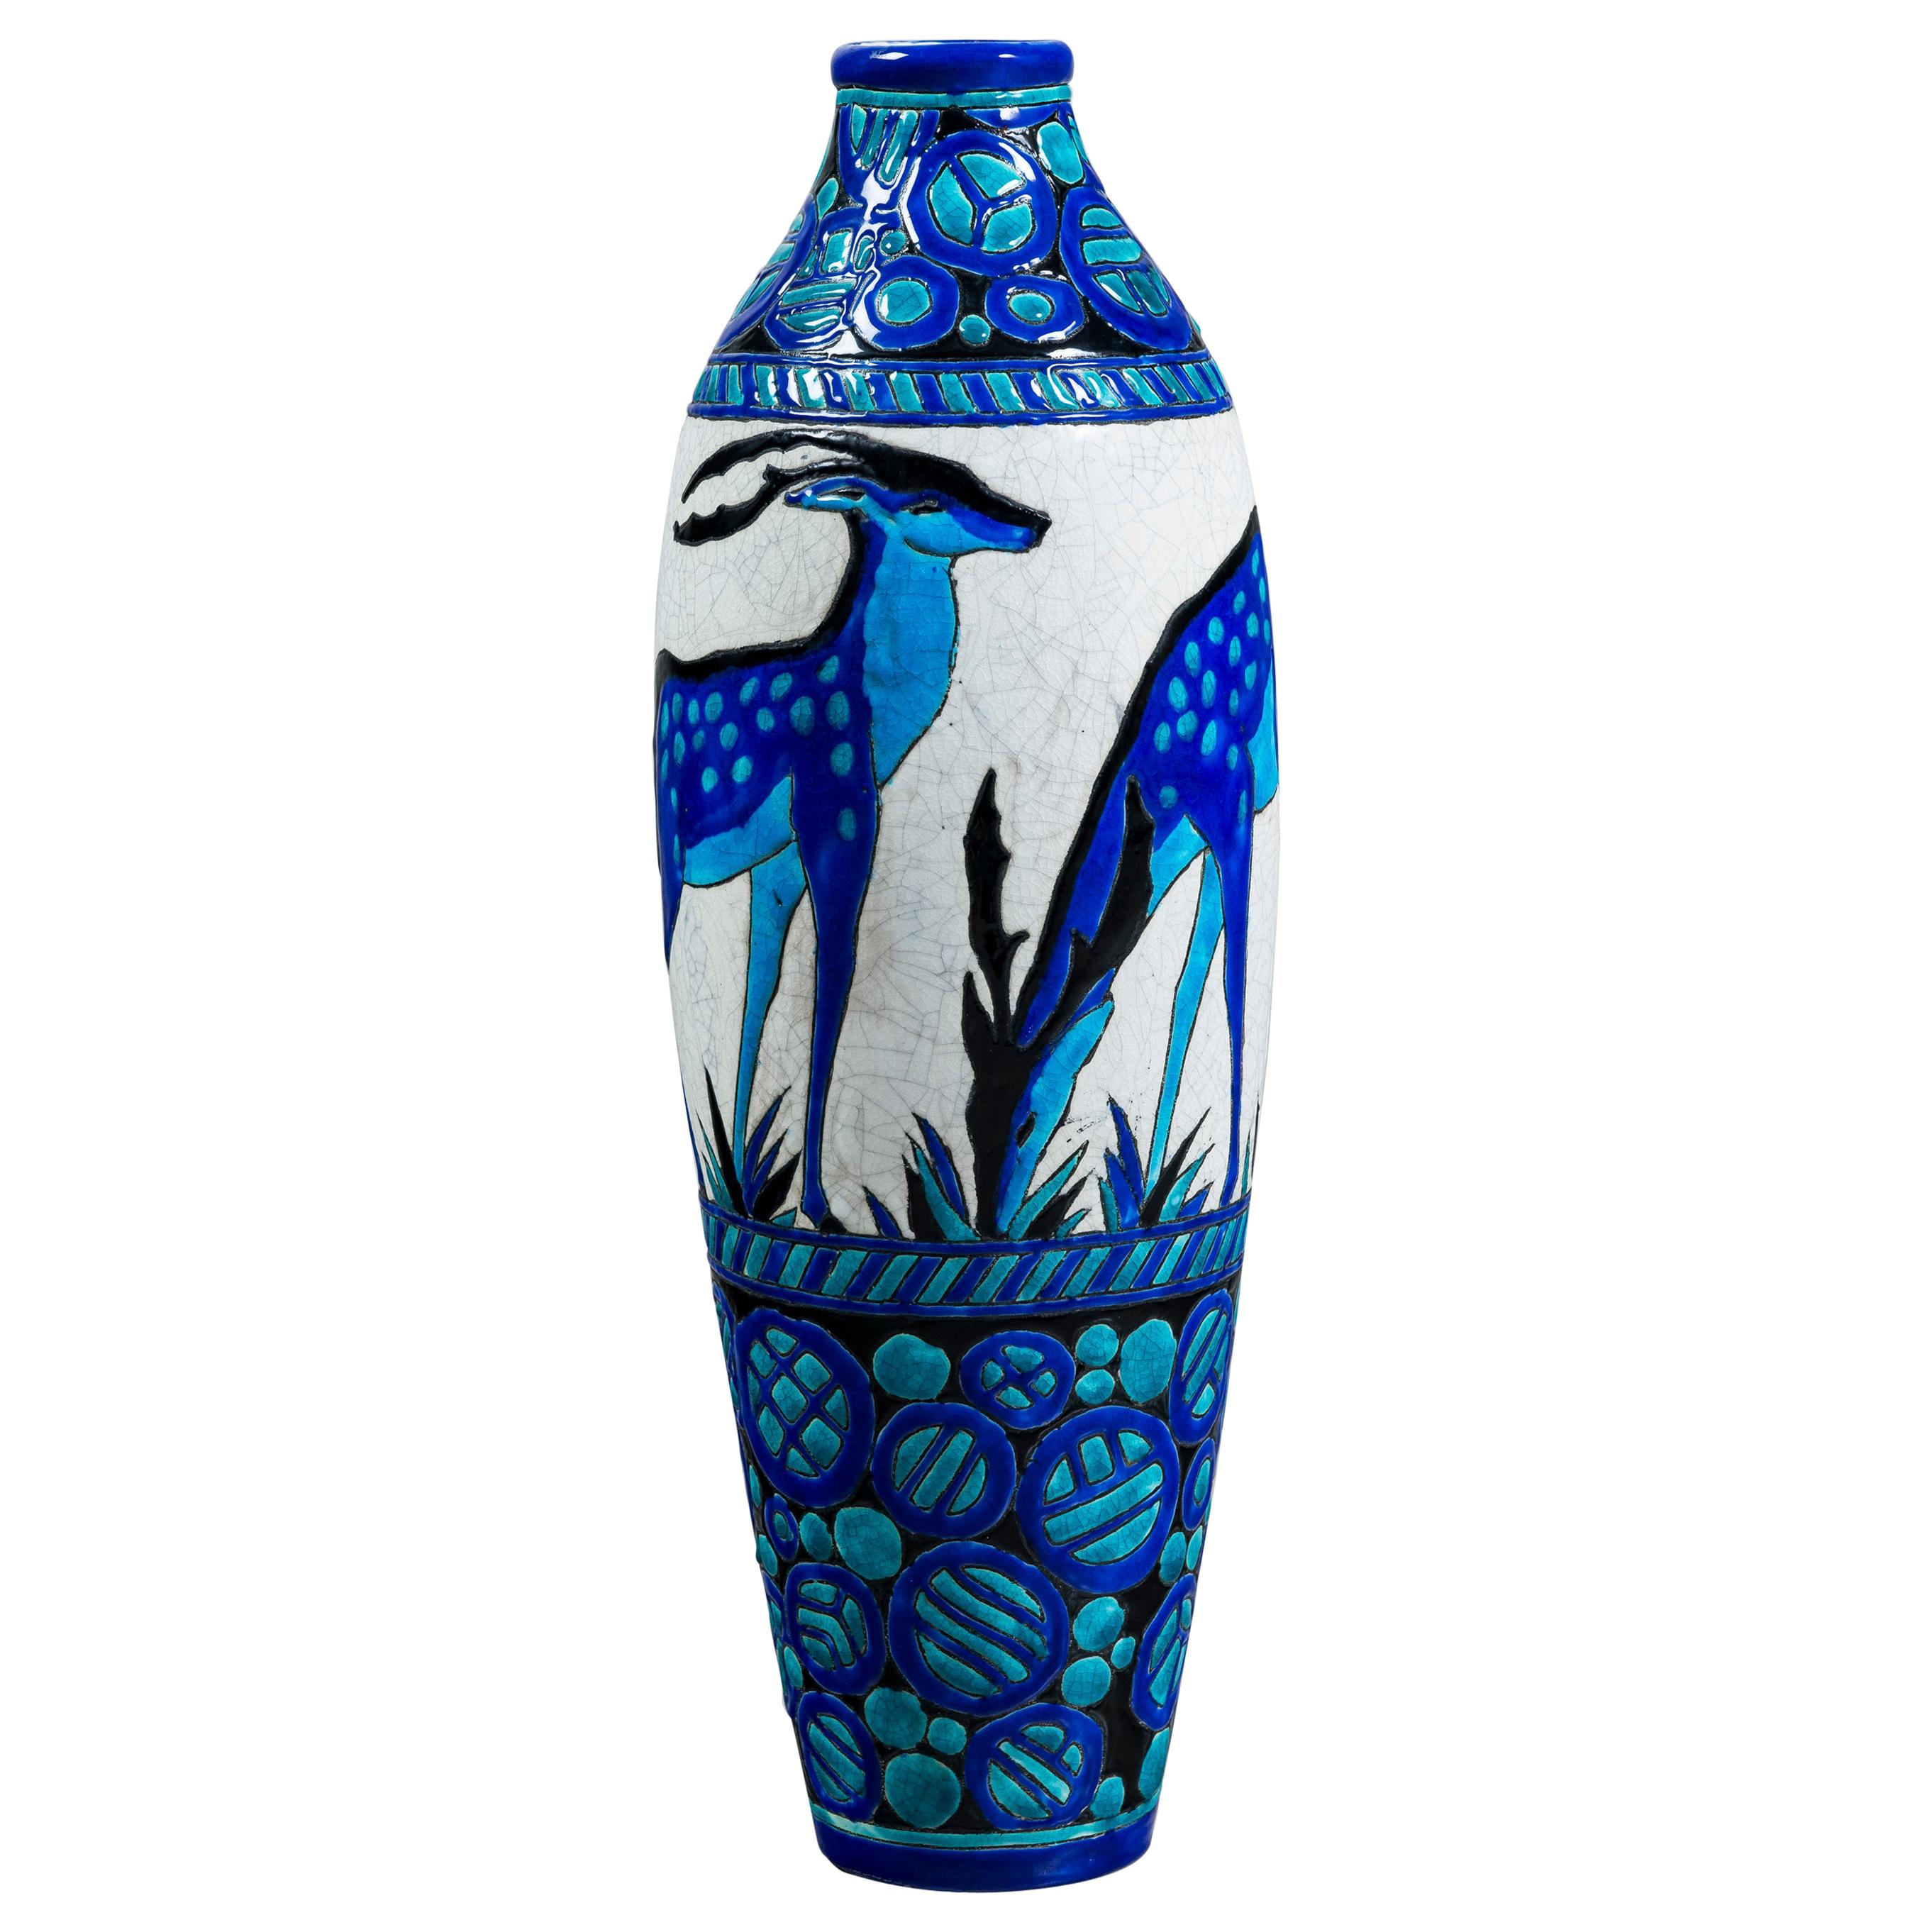 Enamel Ceramic Flower Vase by Charles Catteau Signed Boch La Louvière For Sale